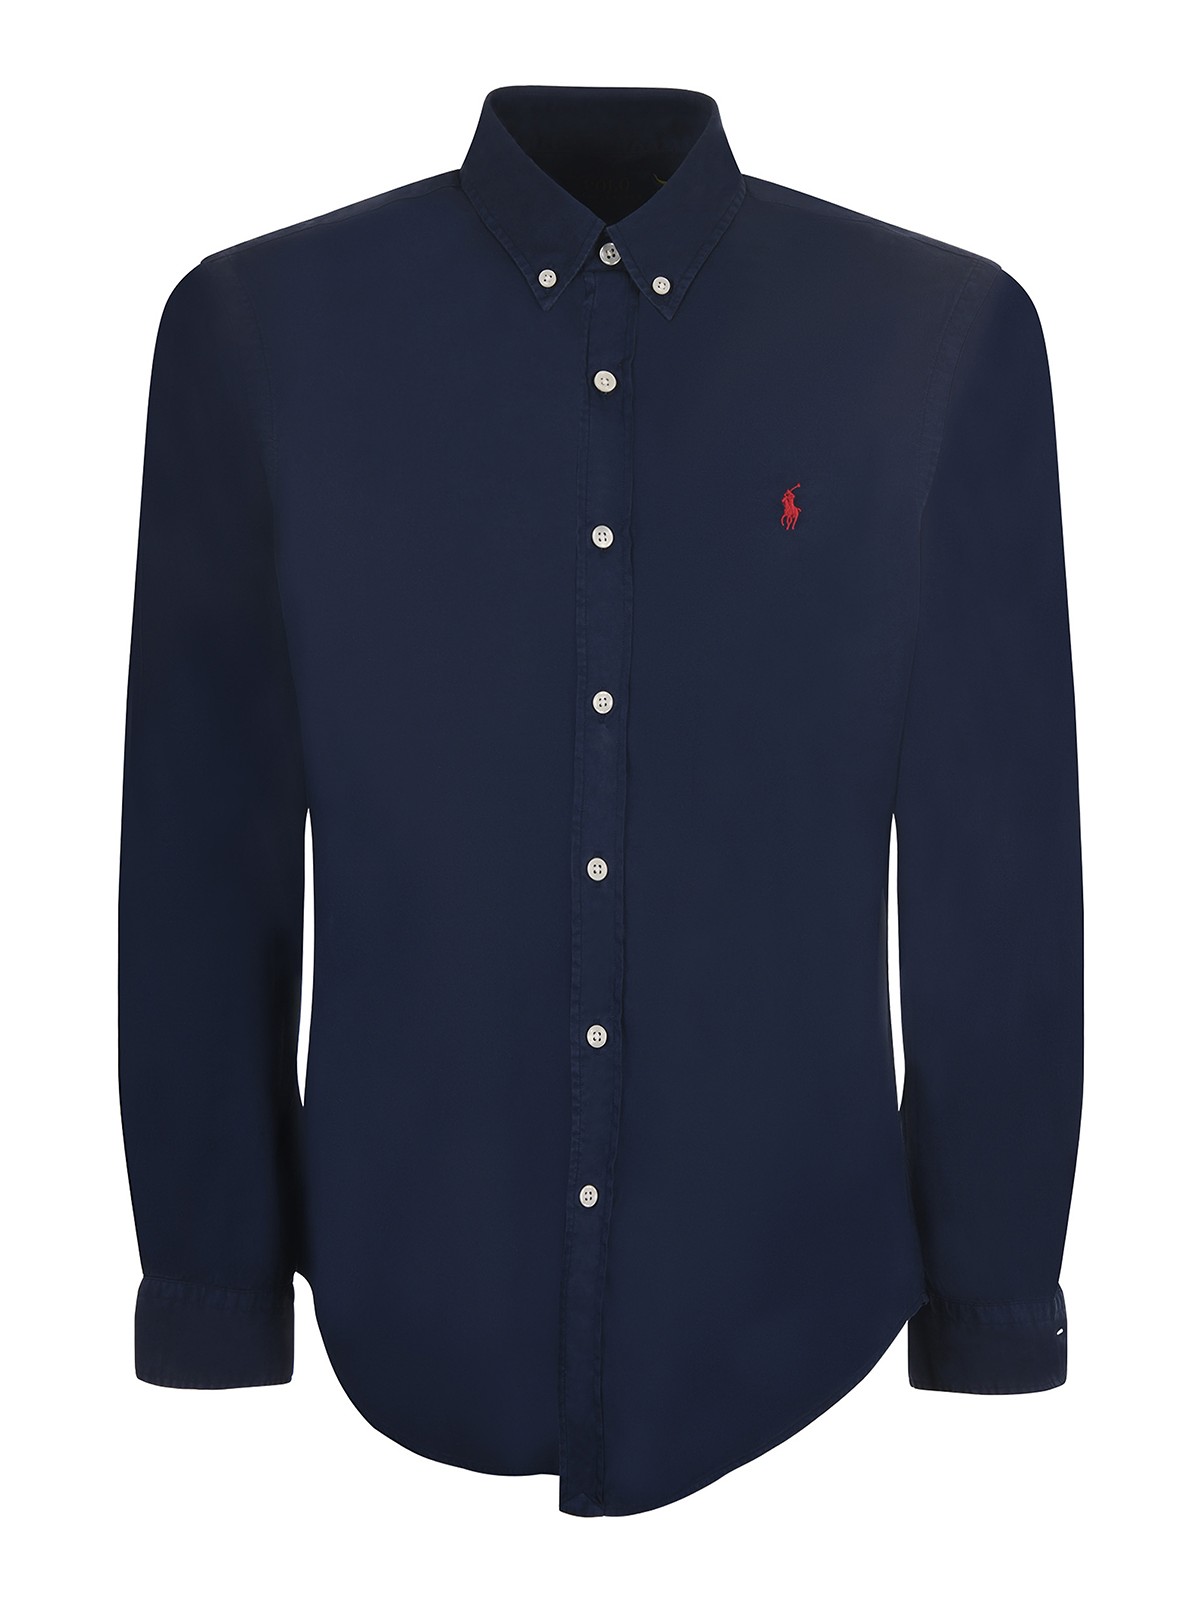 Shirts Polo Ralph Lauren - Polo ralph lauren shirt - 906936008